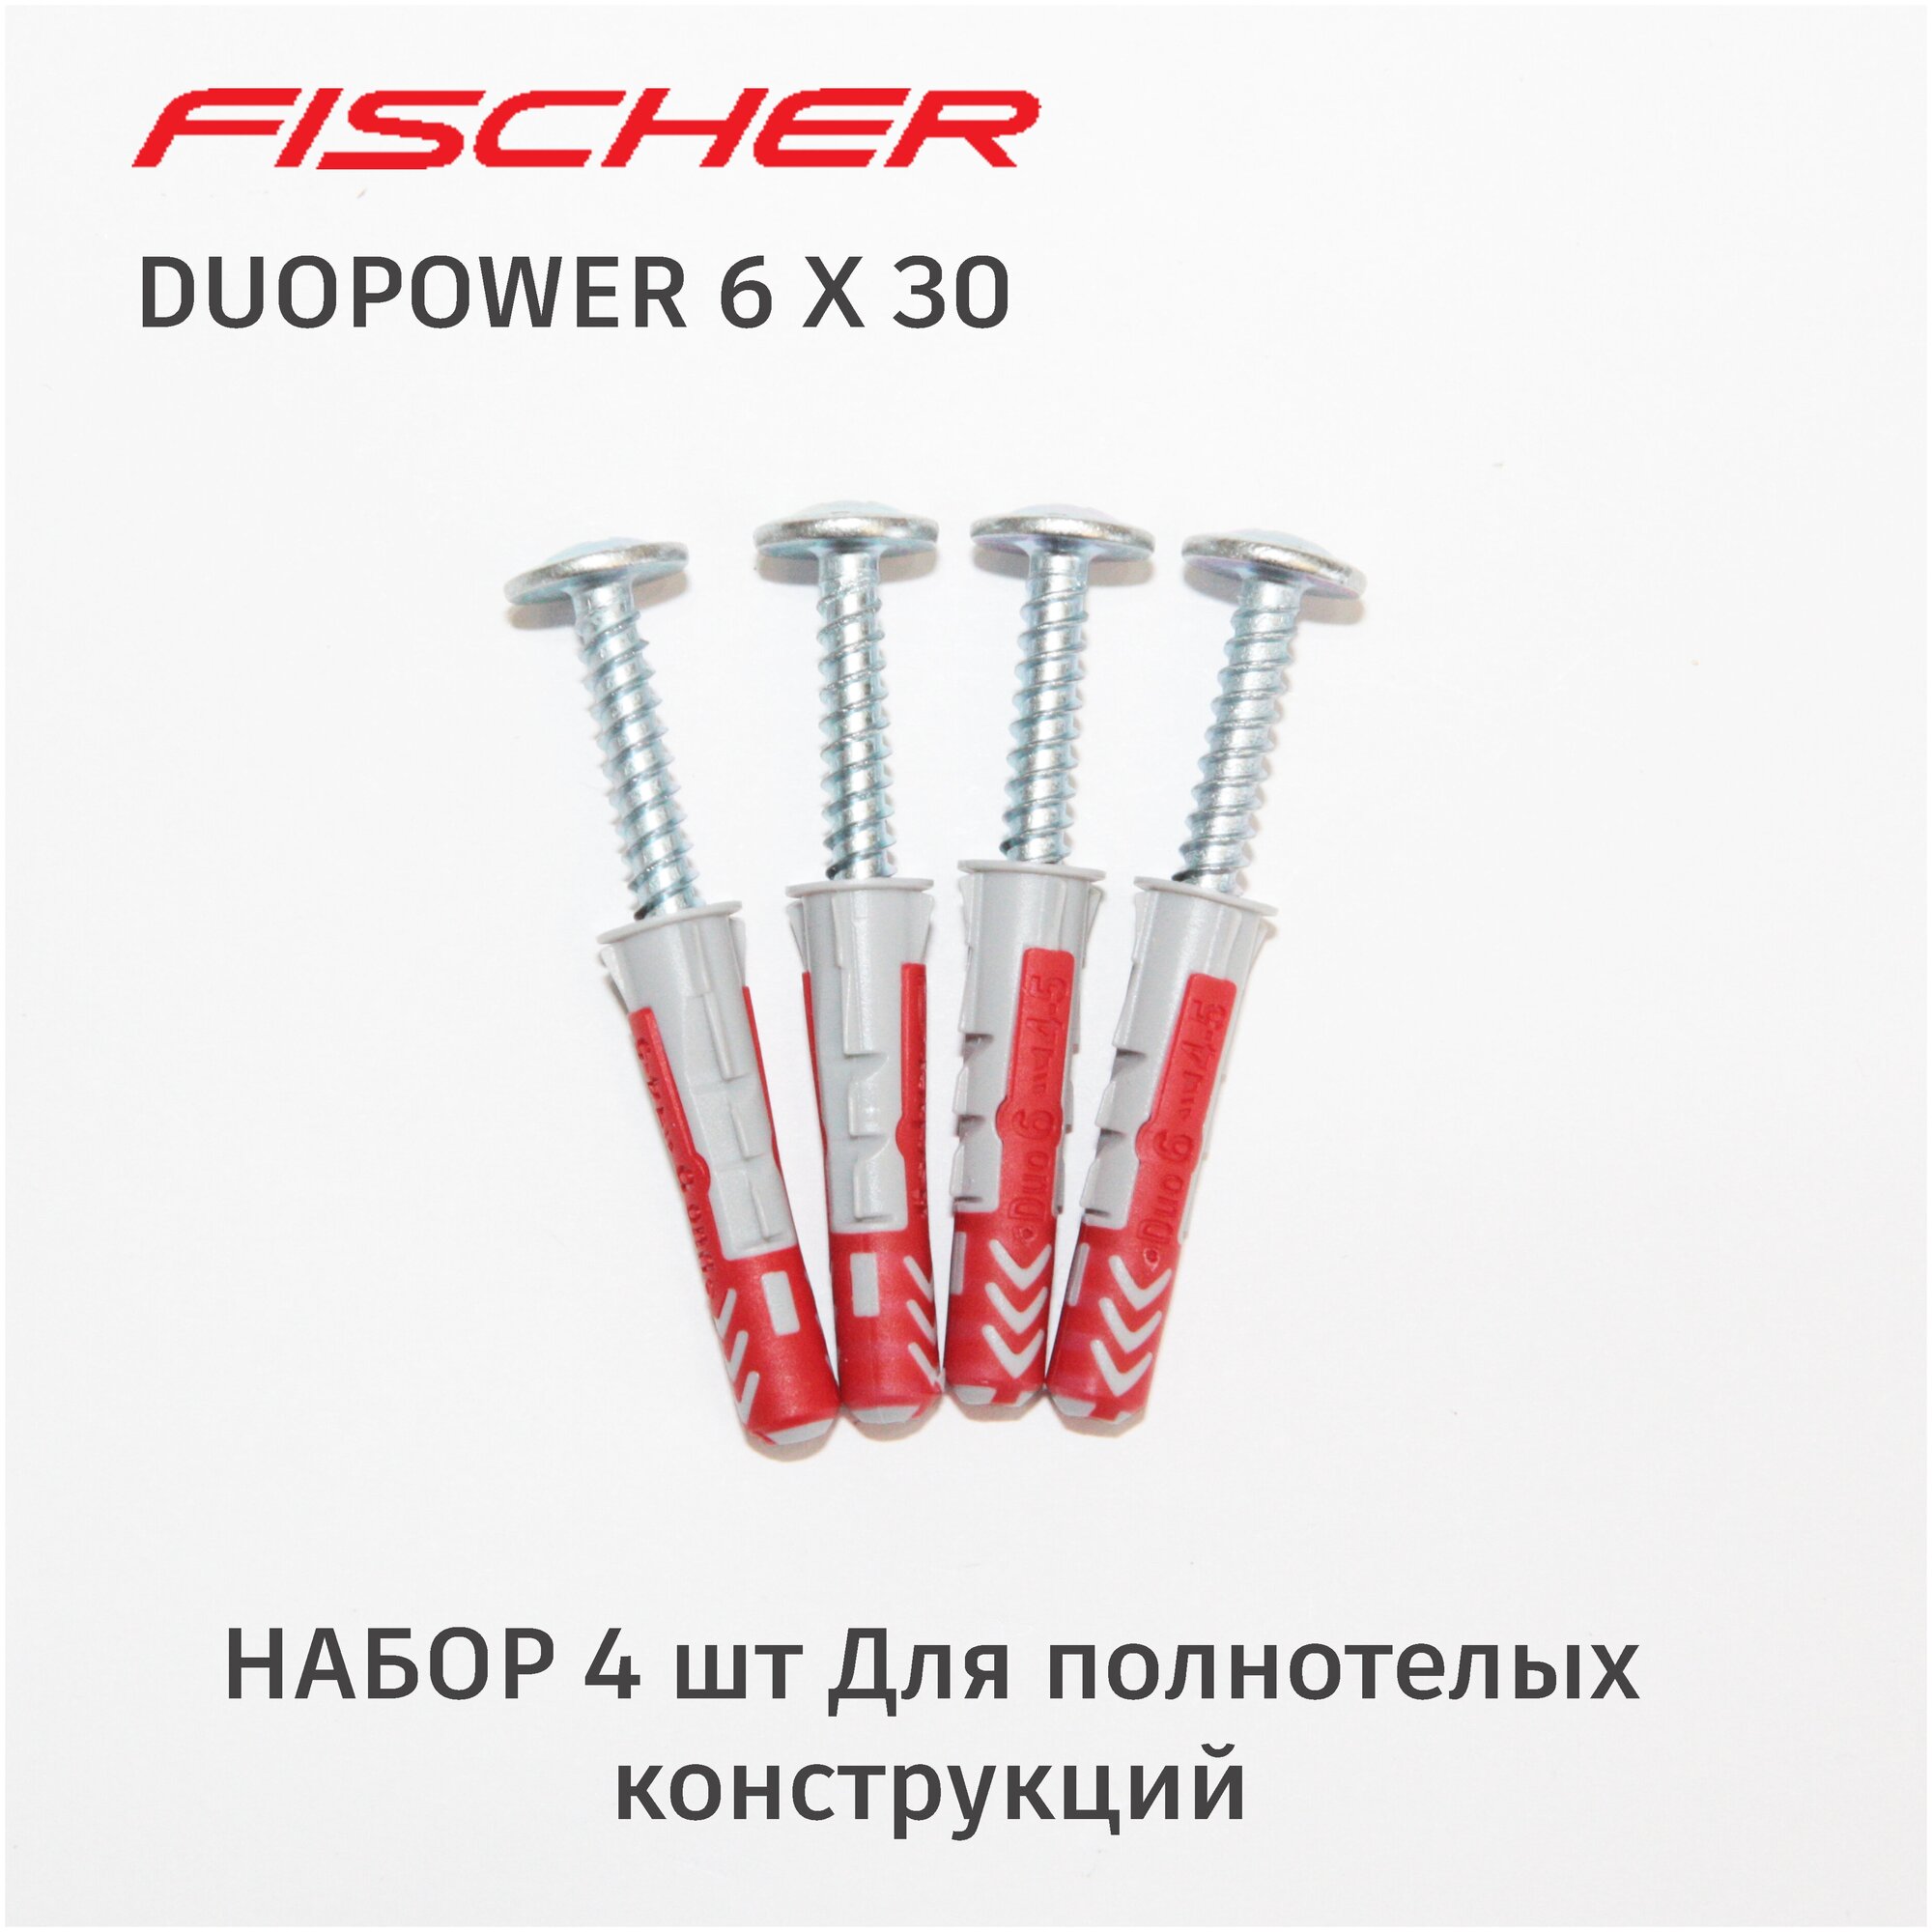 Дюбель Fischer DuoPower 6x30 мм универсальный двухкомпонентный 4 шт. + саморезы с прессшайбой